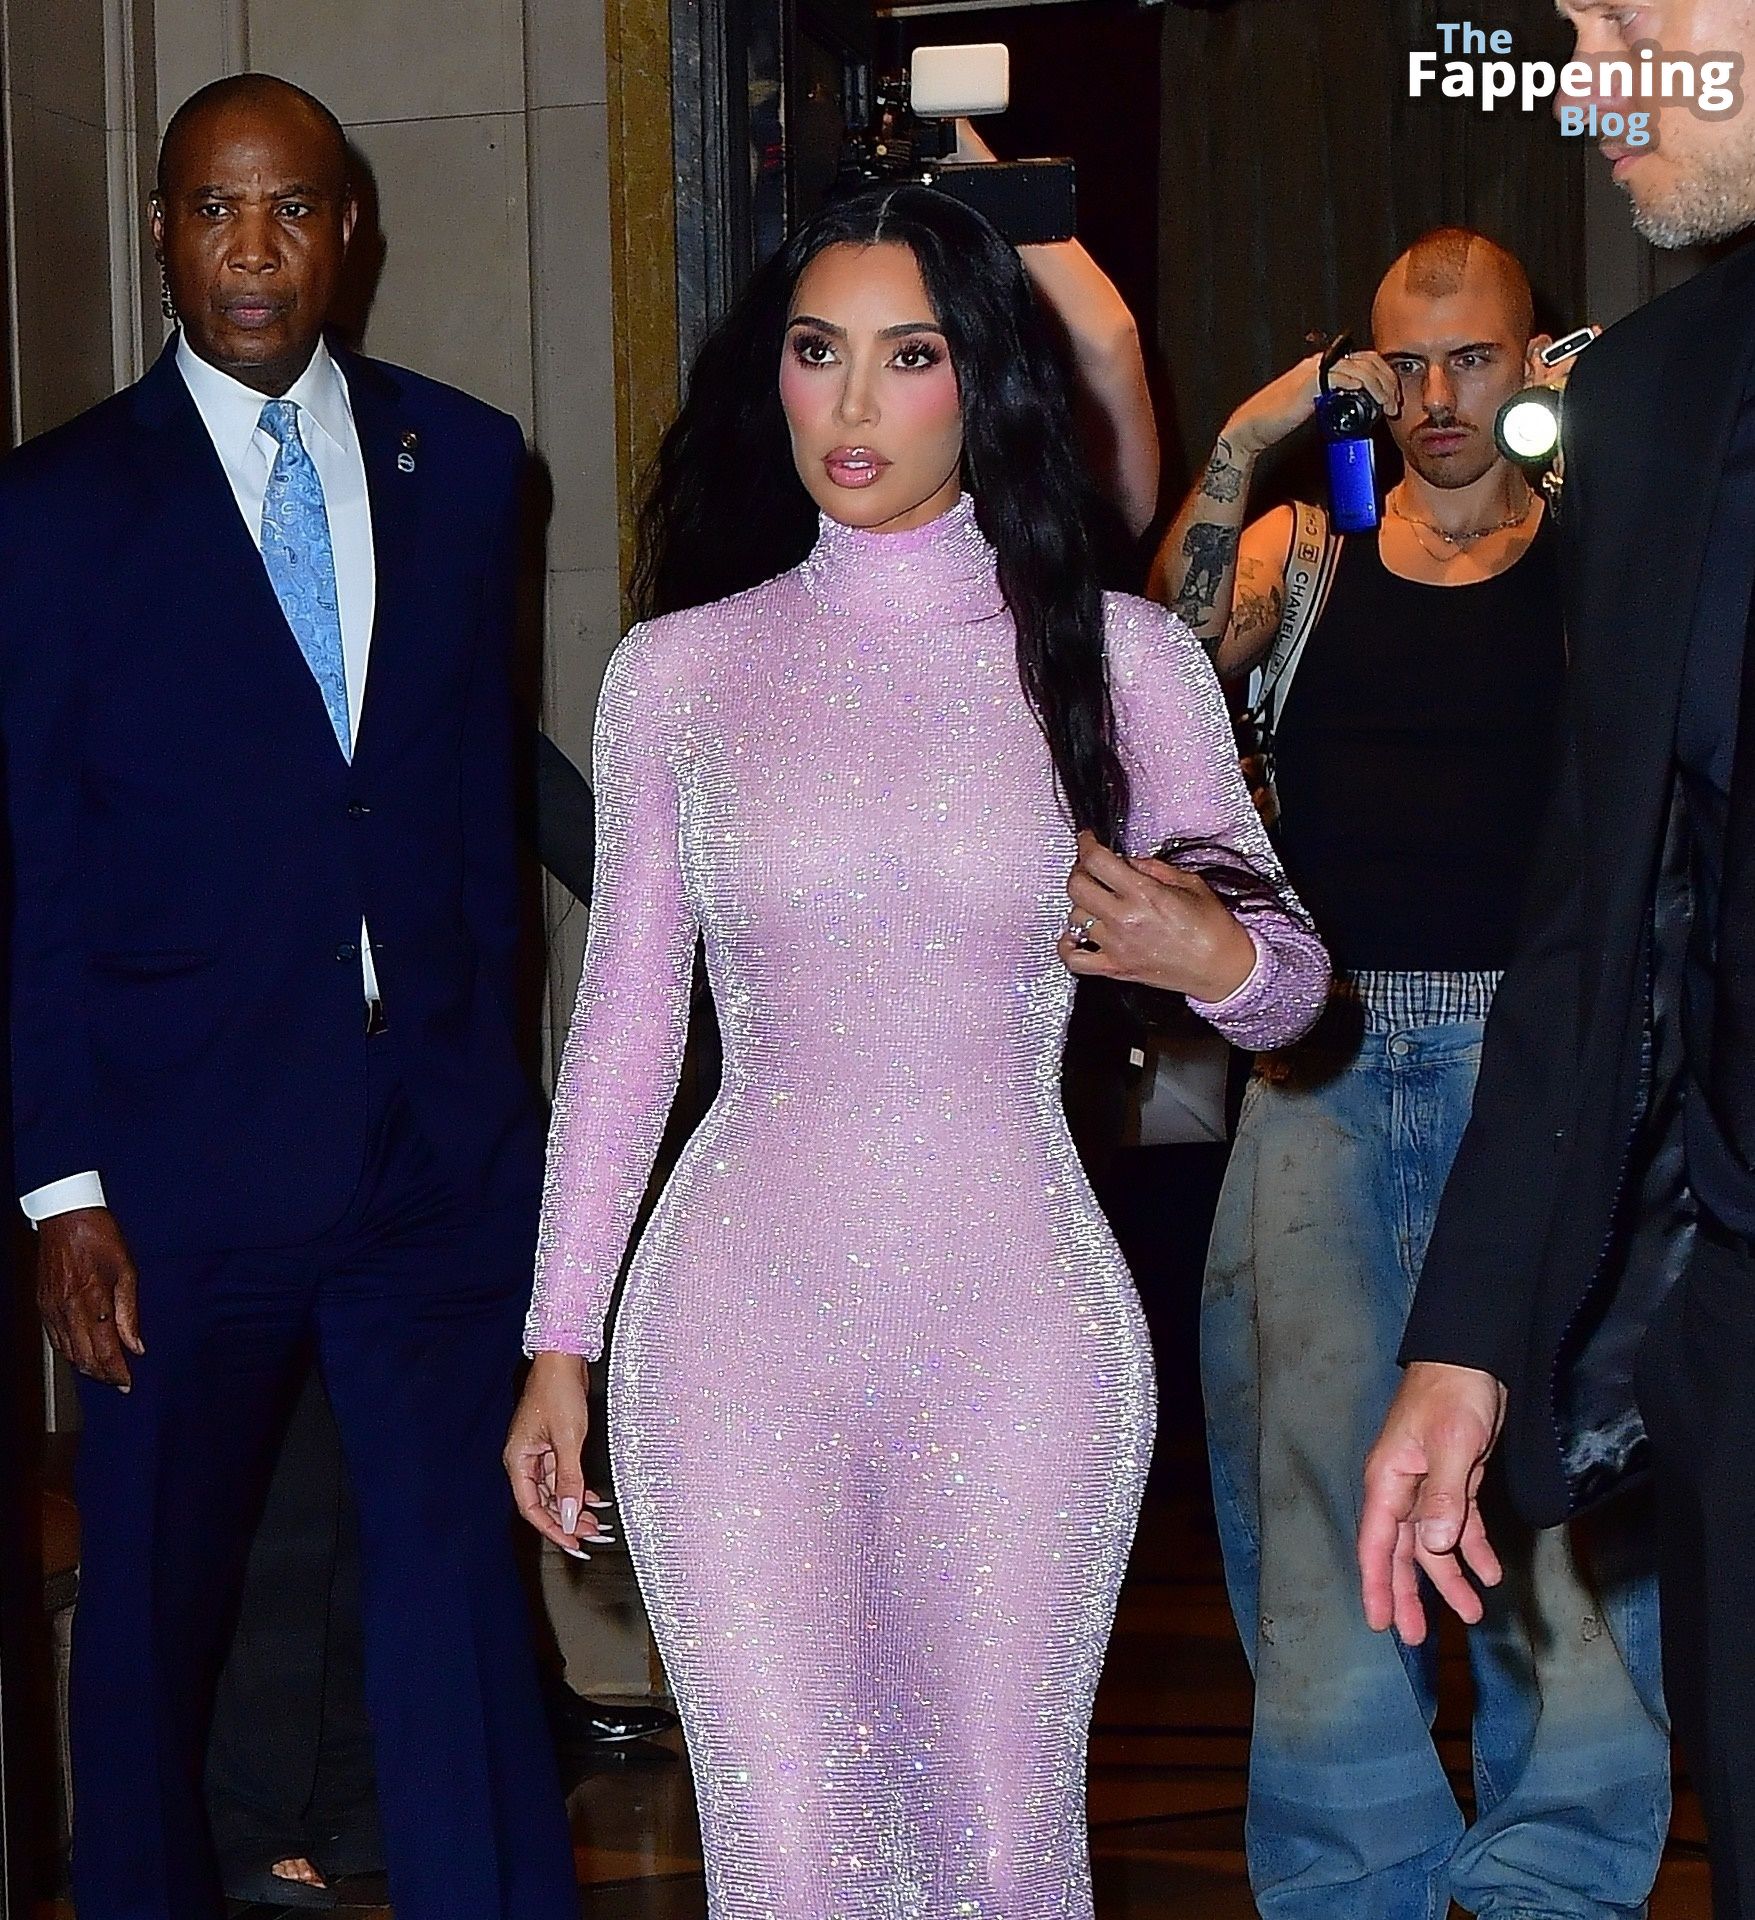 Kim-Kardashian-Sexy-4-The-Fappening-Blog-1.jpg